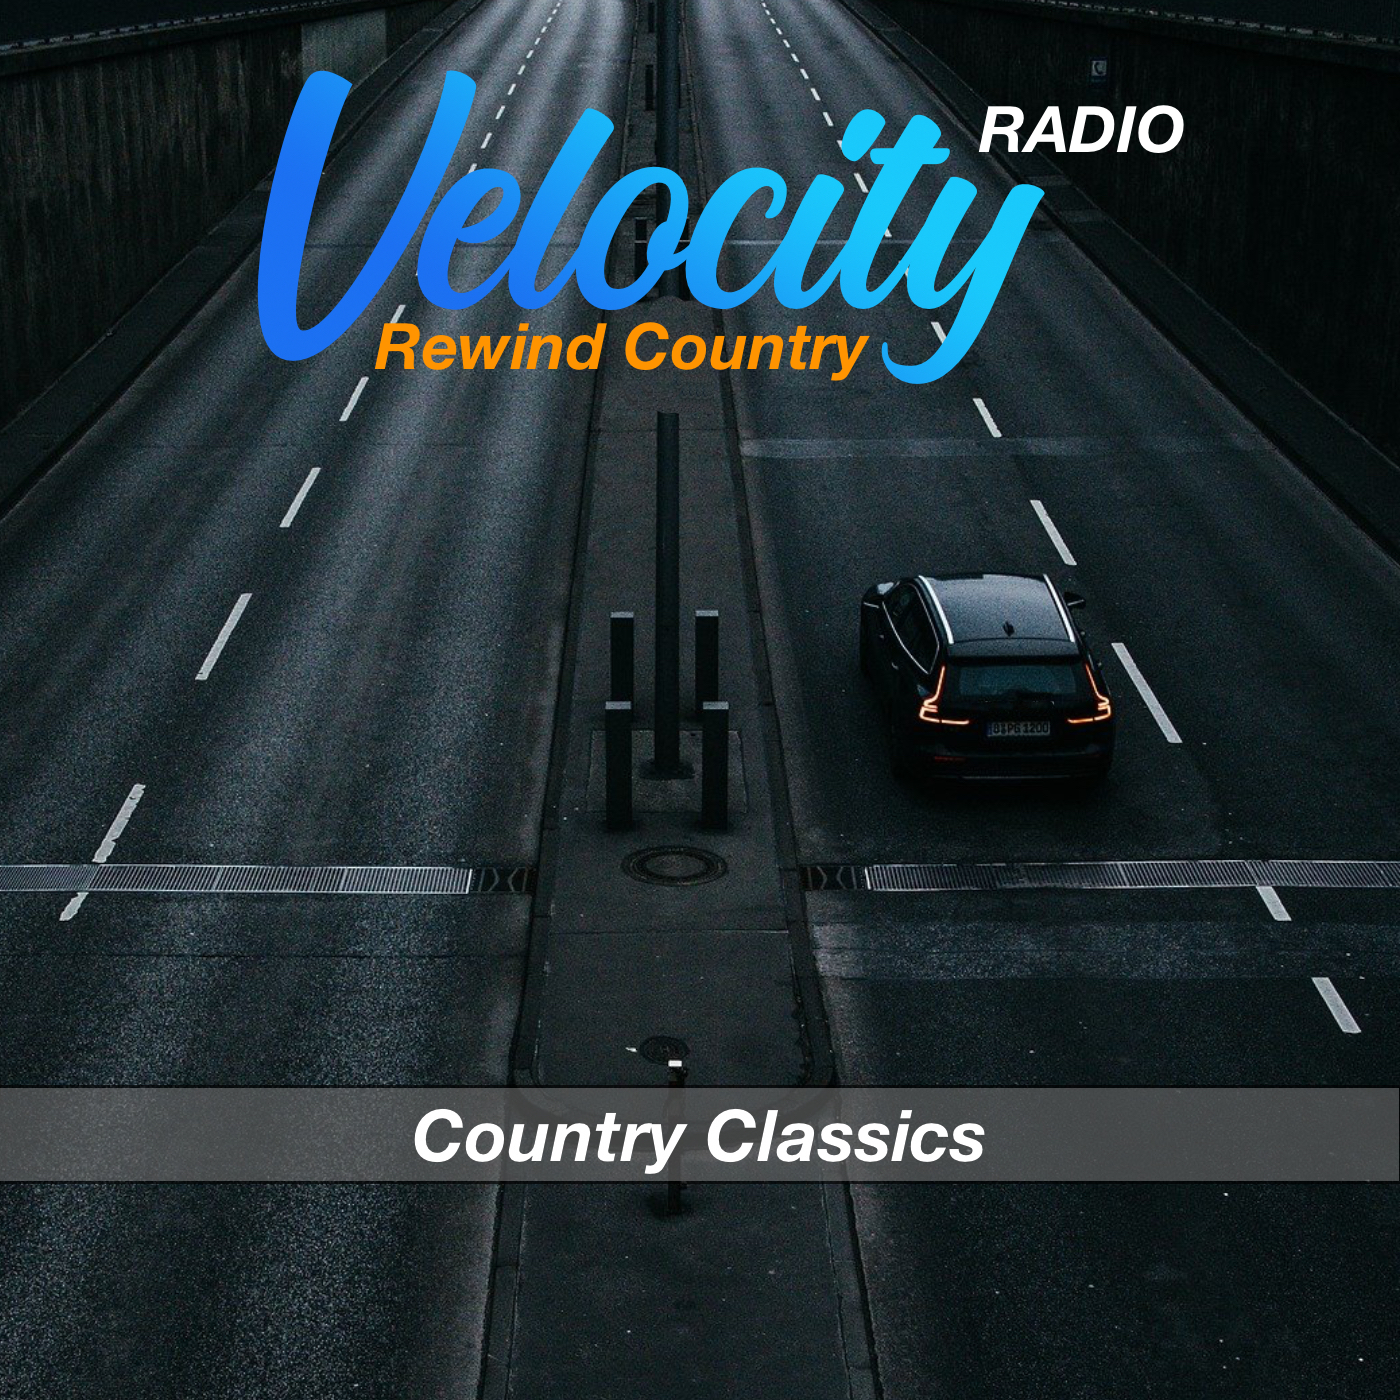 Velocity Radio - Rewind Country